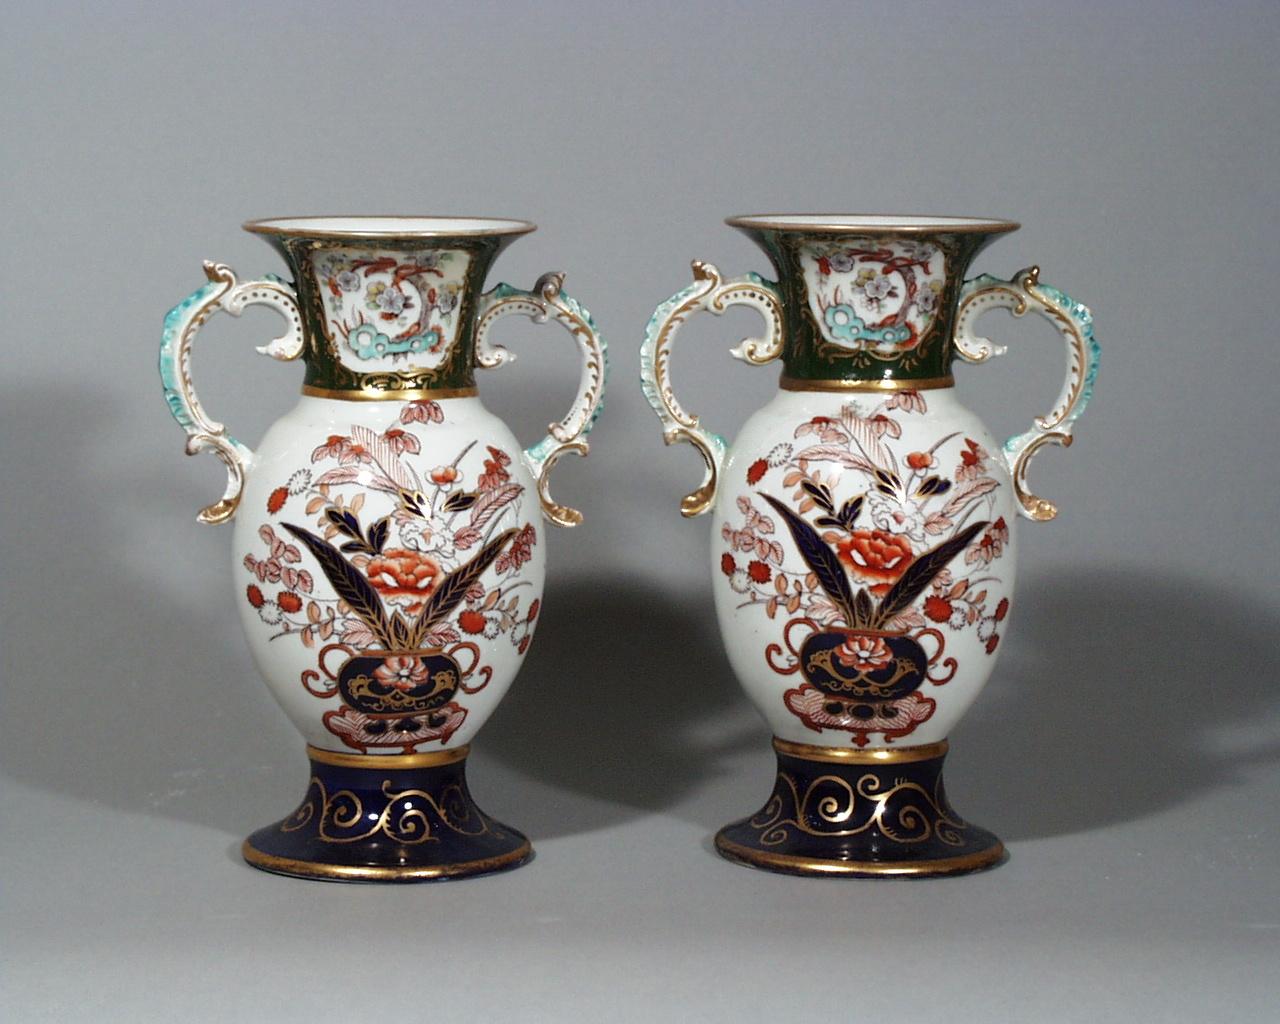 Paire de vases en pierre de fer de Mason à motif japonais,
vers 1830-1840.
 
Les vases sont décorés dans une palette imari avec des poignées à volutes rehaussées de turquoise et de dorure. Le pied circulaire évasé est sur fond bleu mazarine avec